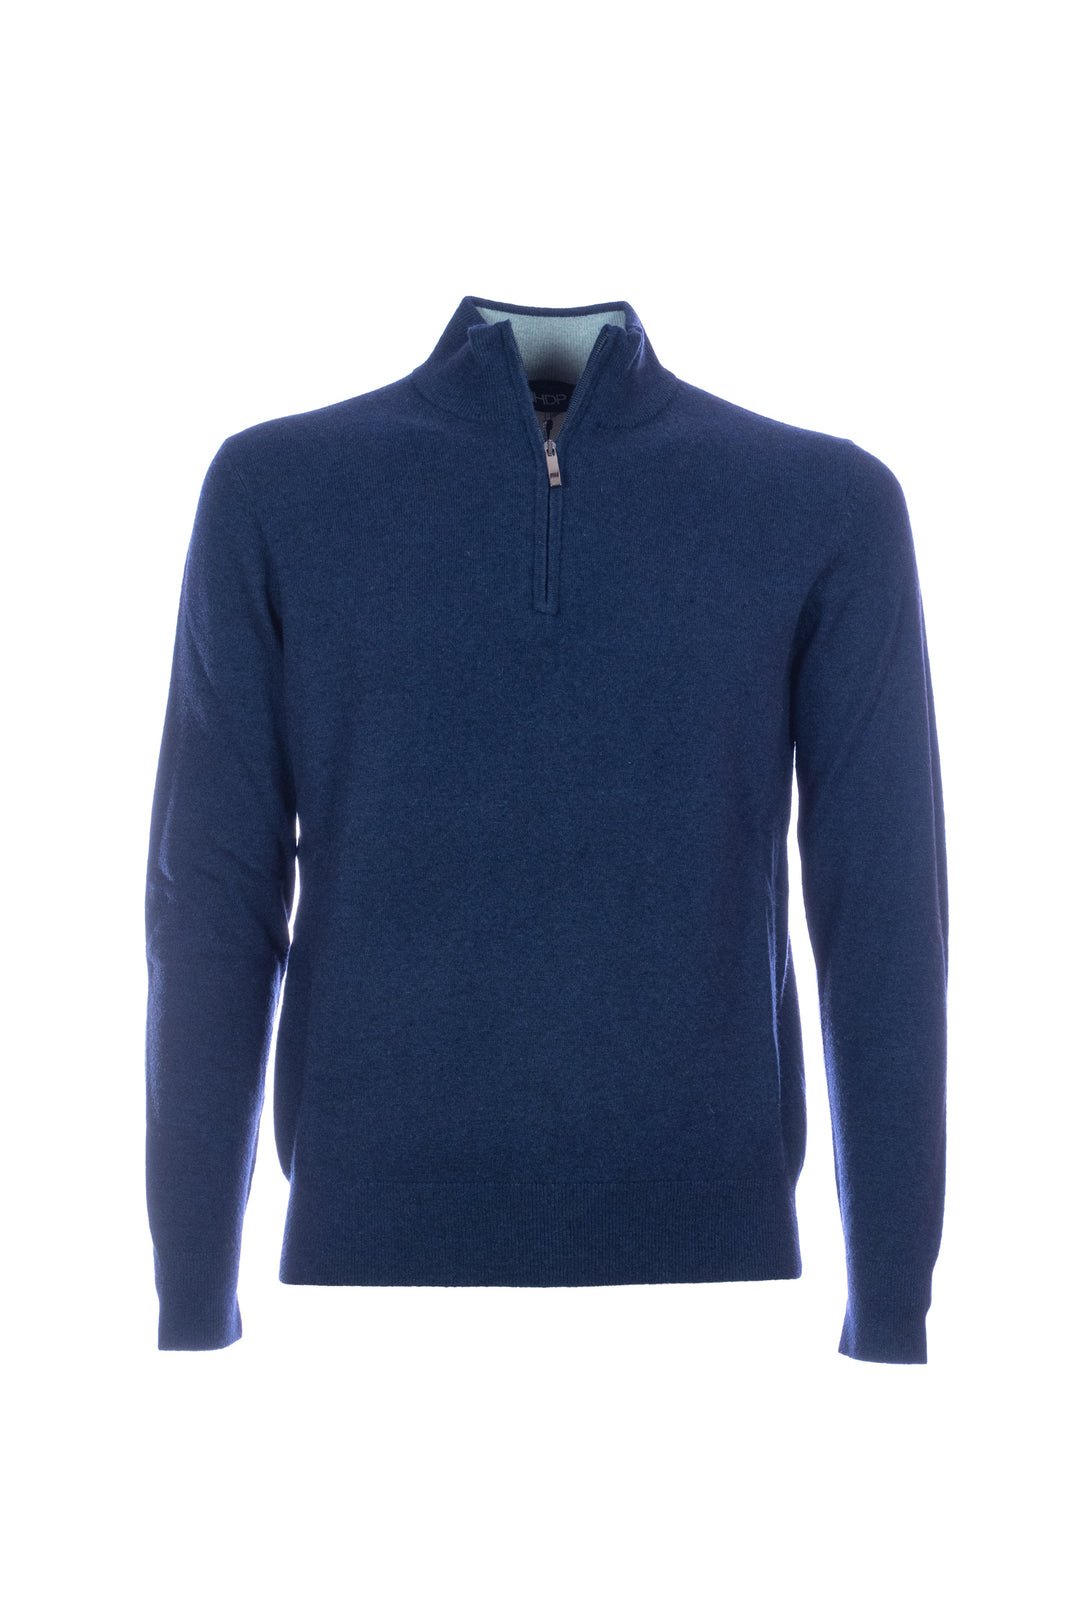 HDP Maglia mezza zip blu in misto lana merino e cashmere - Mancinelli 1954